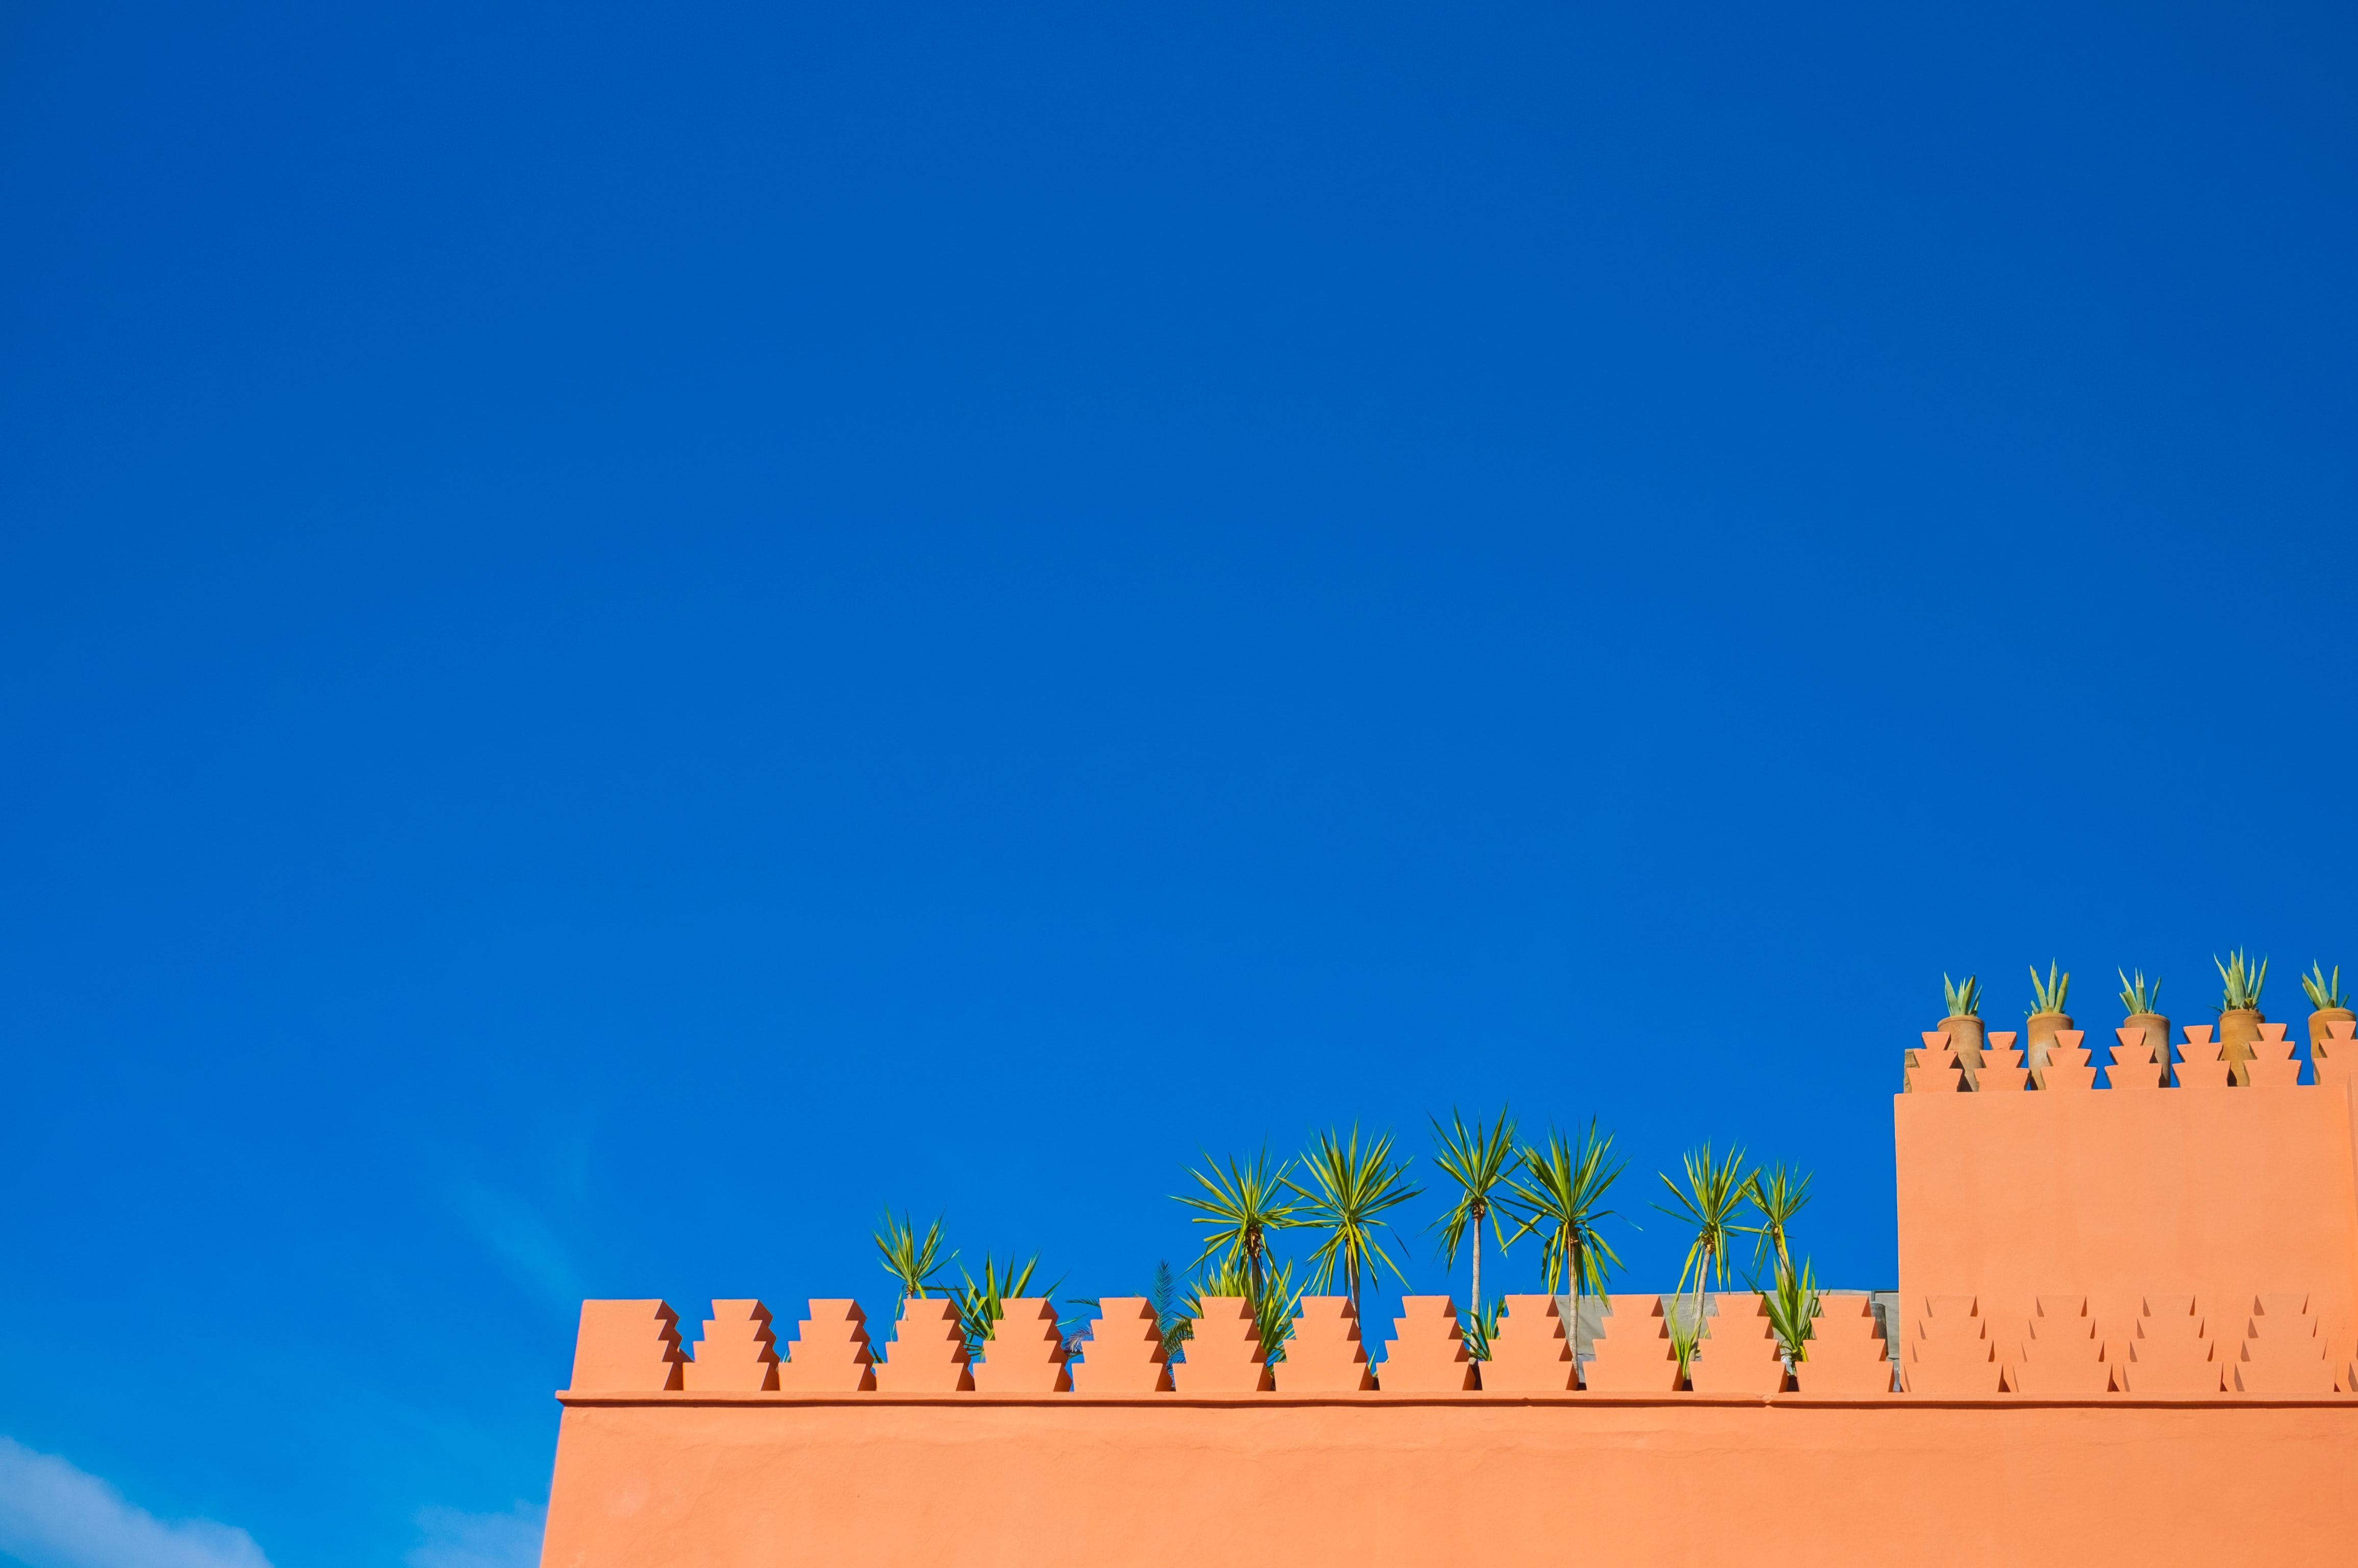 dettaglio edificio a Marrakech